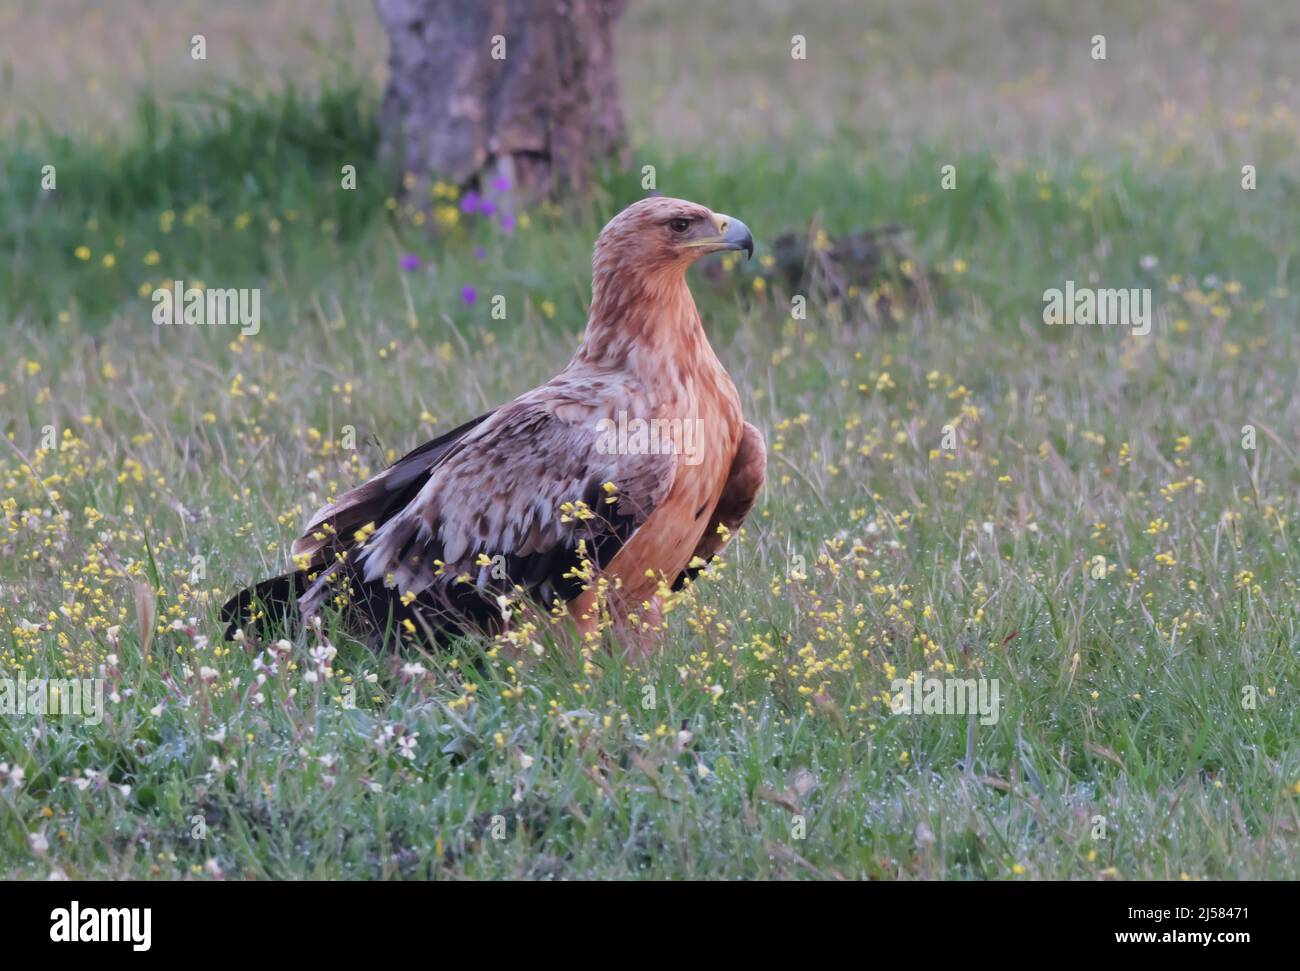 Kaiseradler (Aquila adalberti) Jungvogel sucht auf der bluehenden Wiese nach Fallwild, Extremadura, Spanien Stock Photo